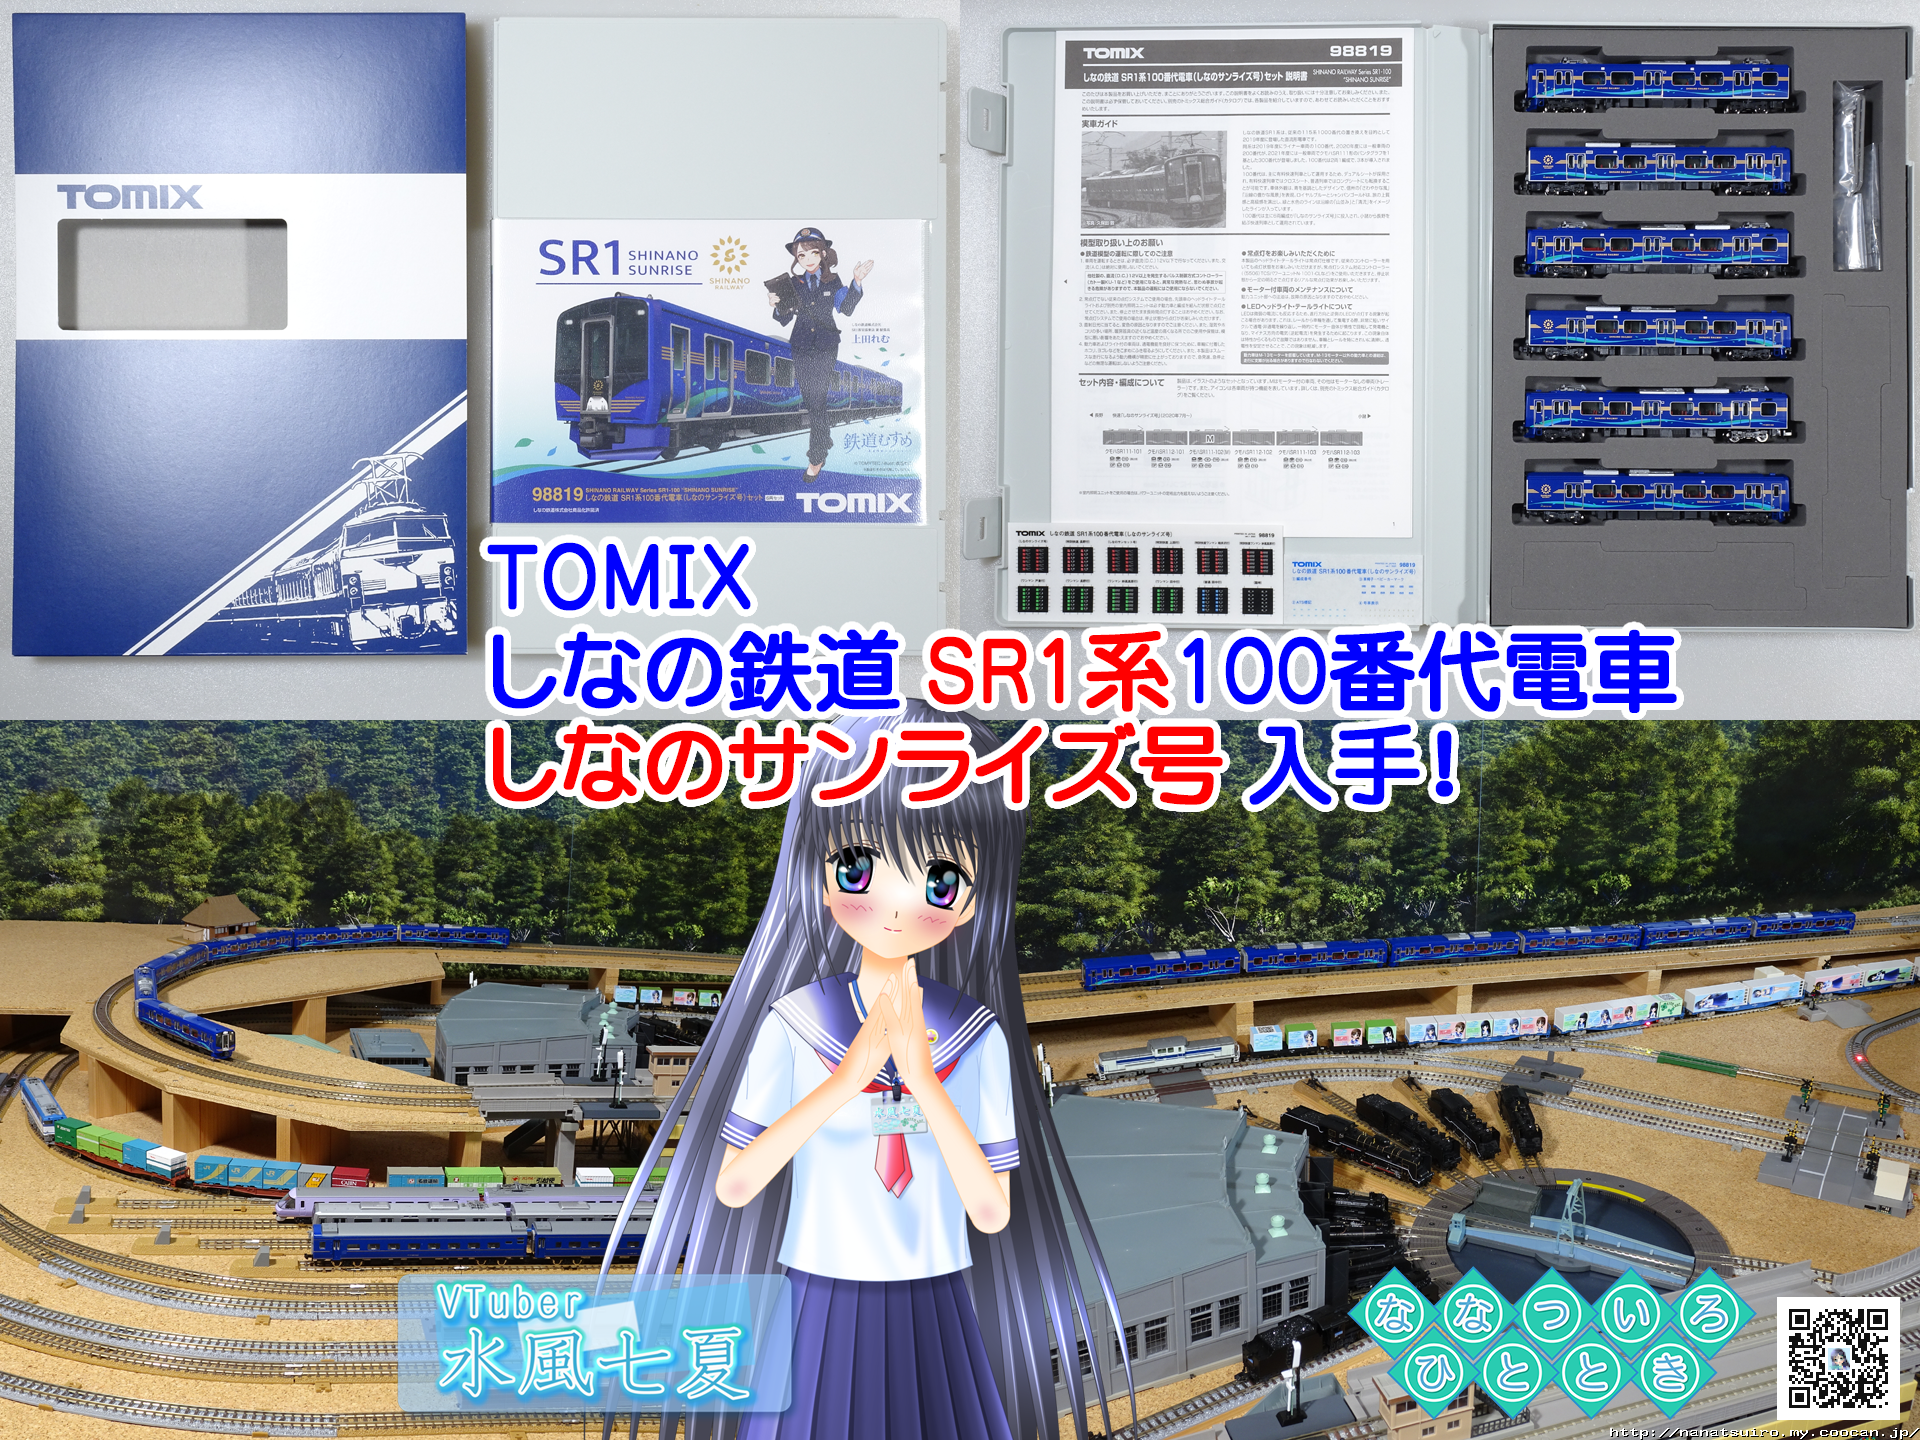 鉄道模型一時 | ◇鉄道模型、TOMIX「しなの鉄道 SR1系100番代電車 し ...